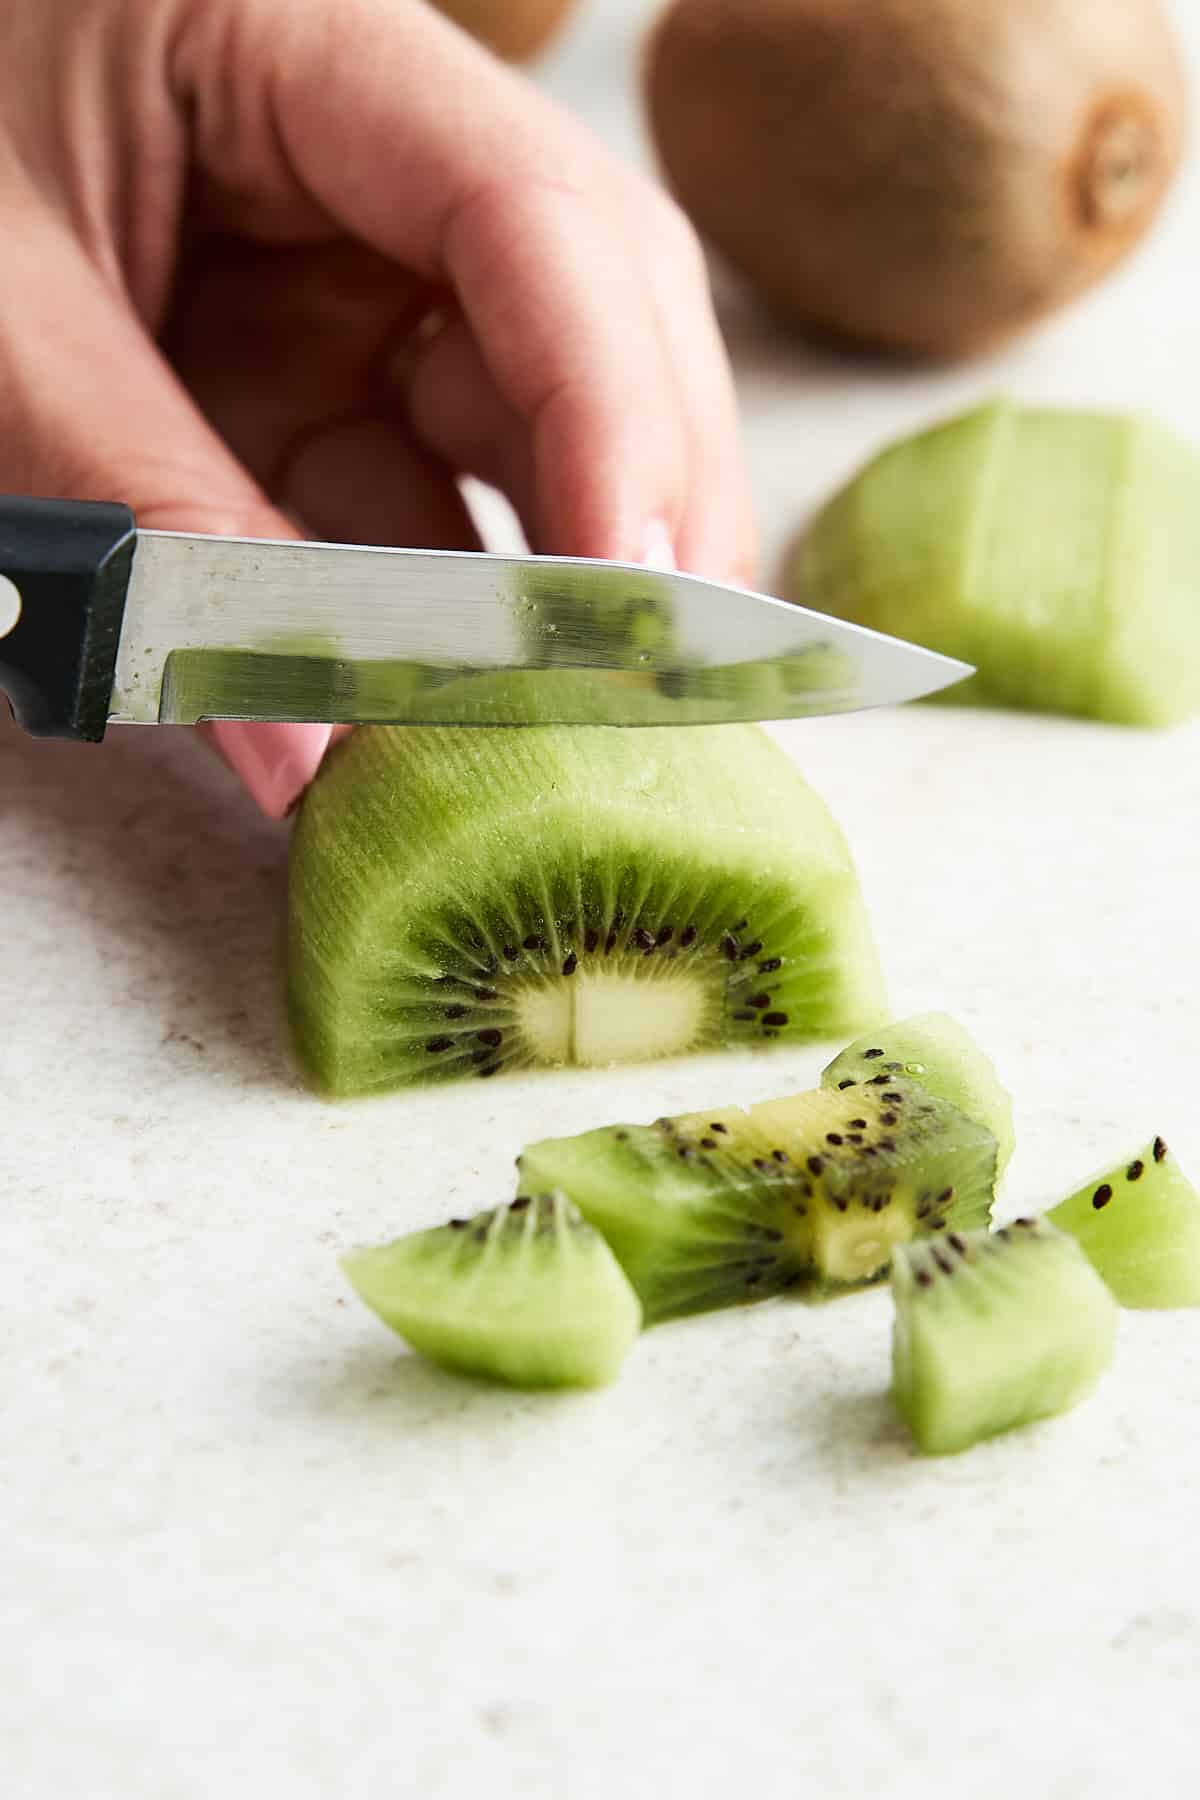 Cubing a kiwi.